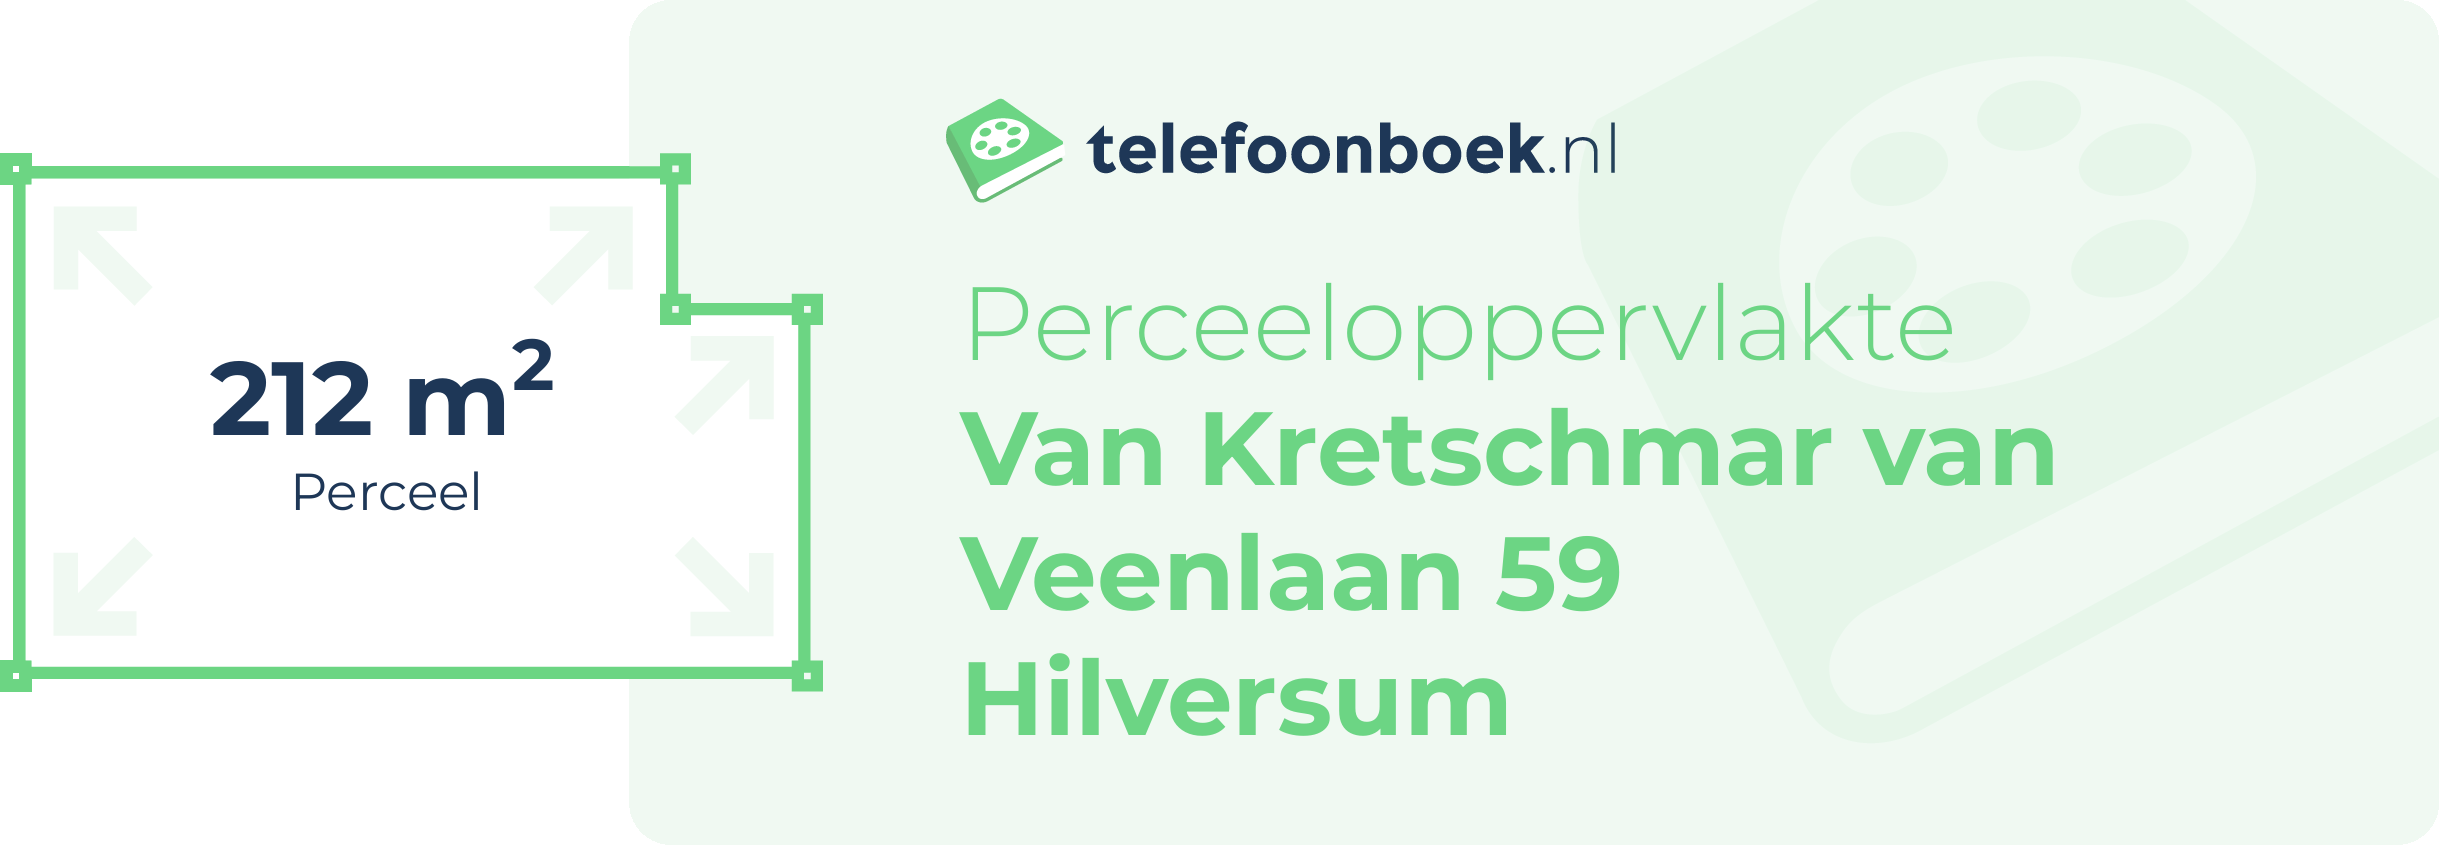 Perceeloppervlakte Van Kretschmar Van Veenlaan 59 Hilversum